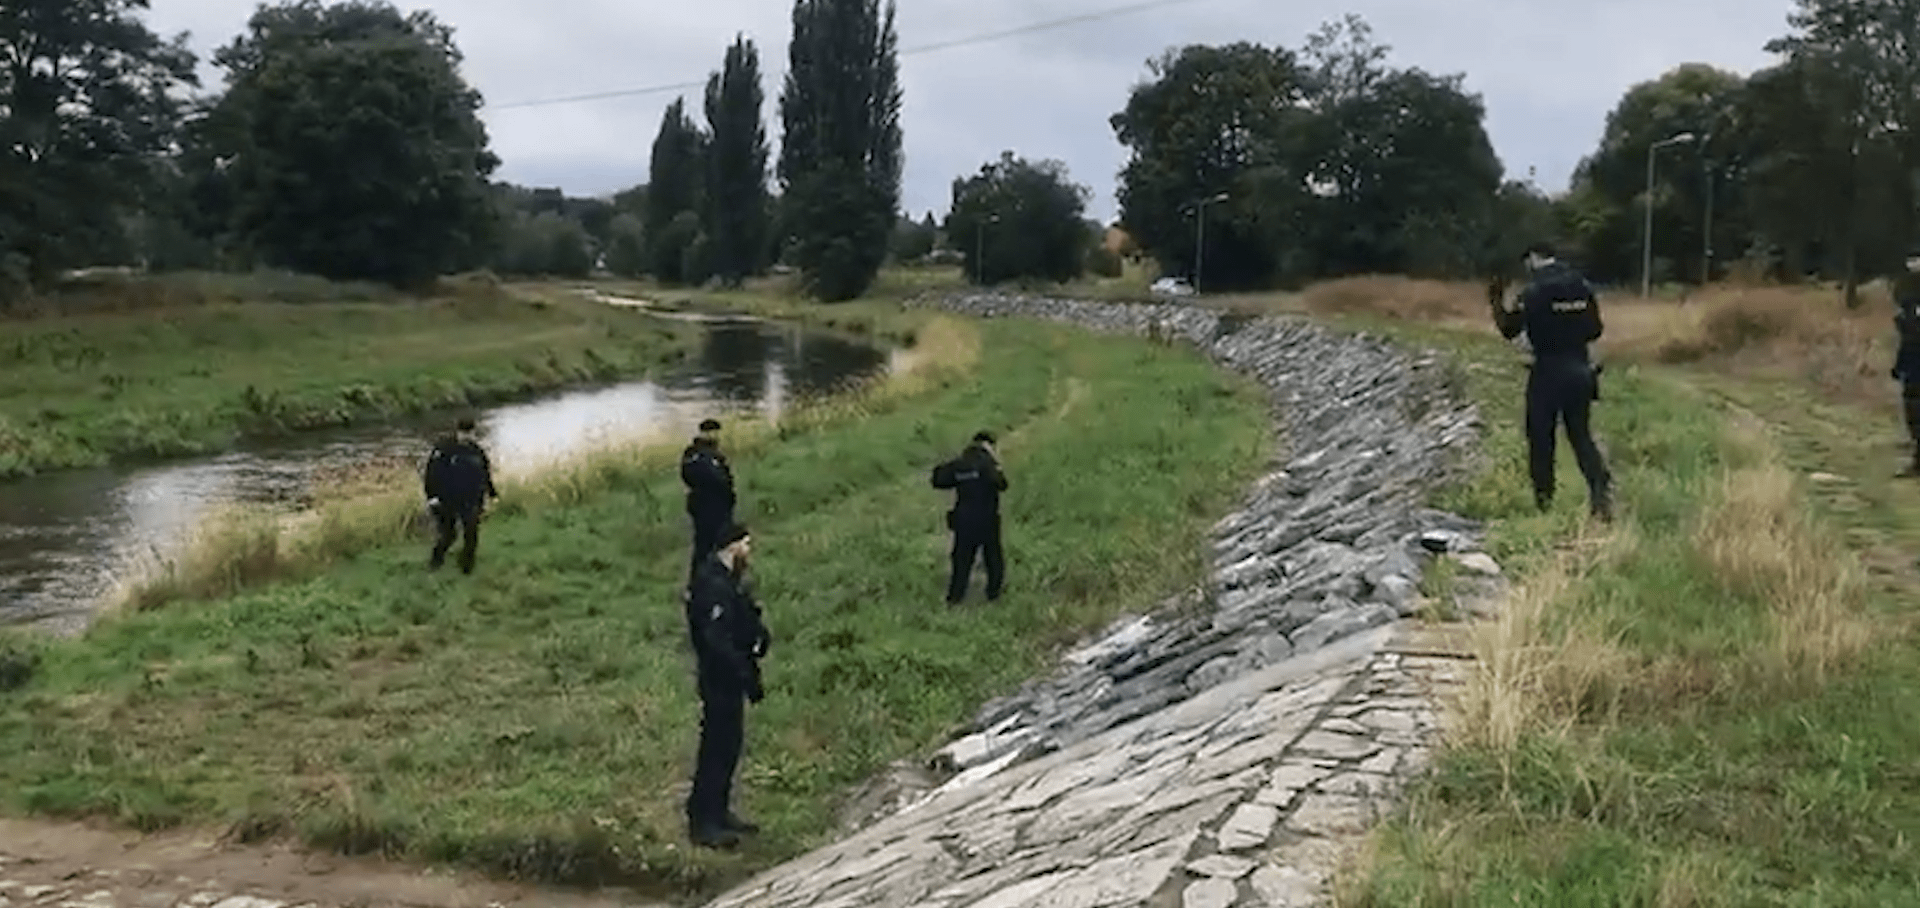 Policie v Plzni vyšetřuje znásilnění